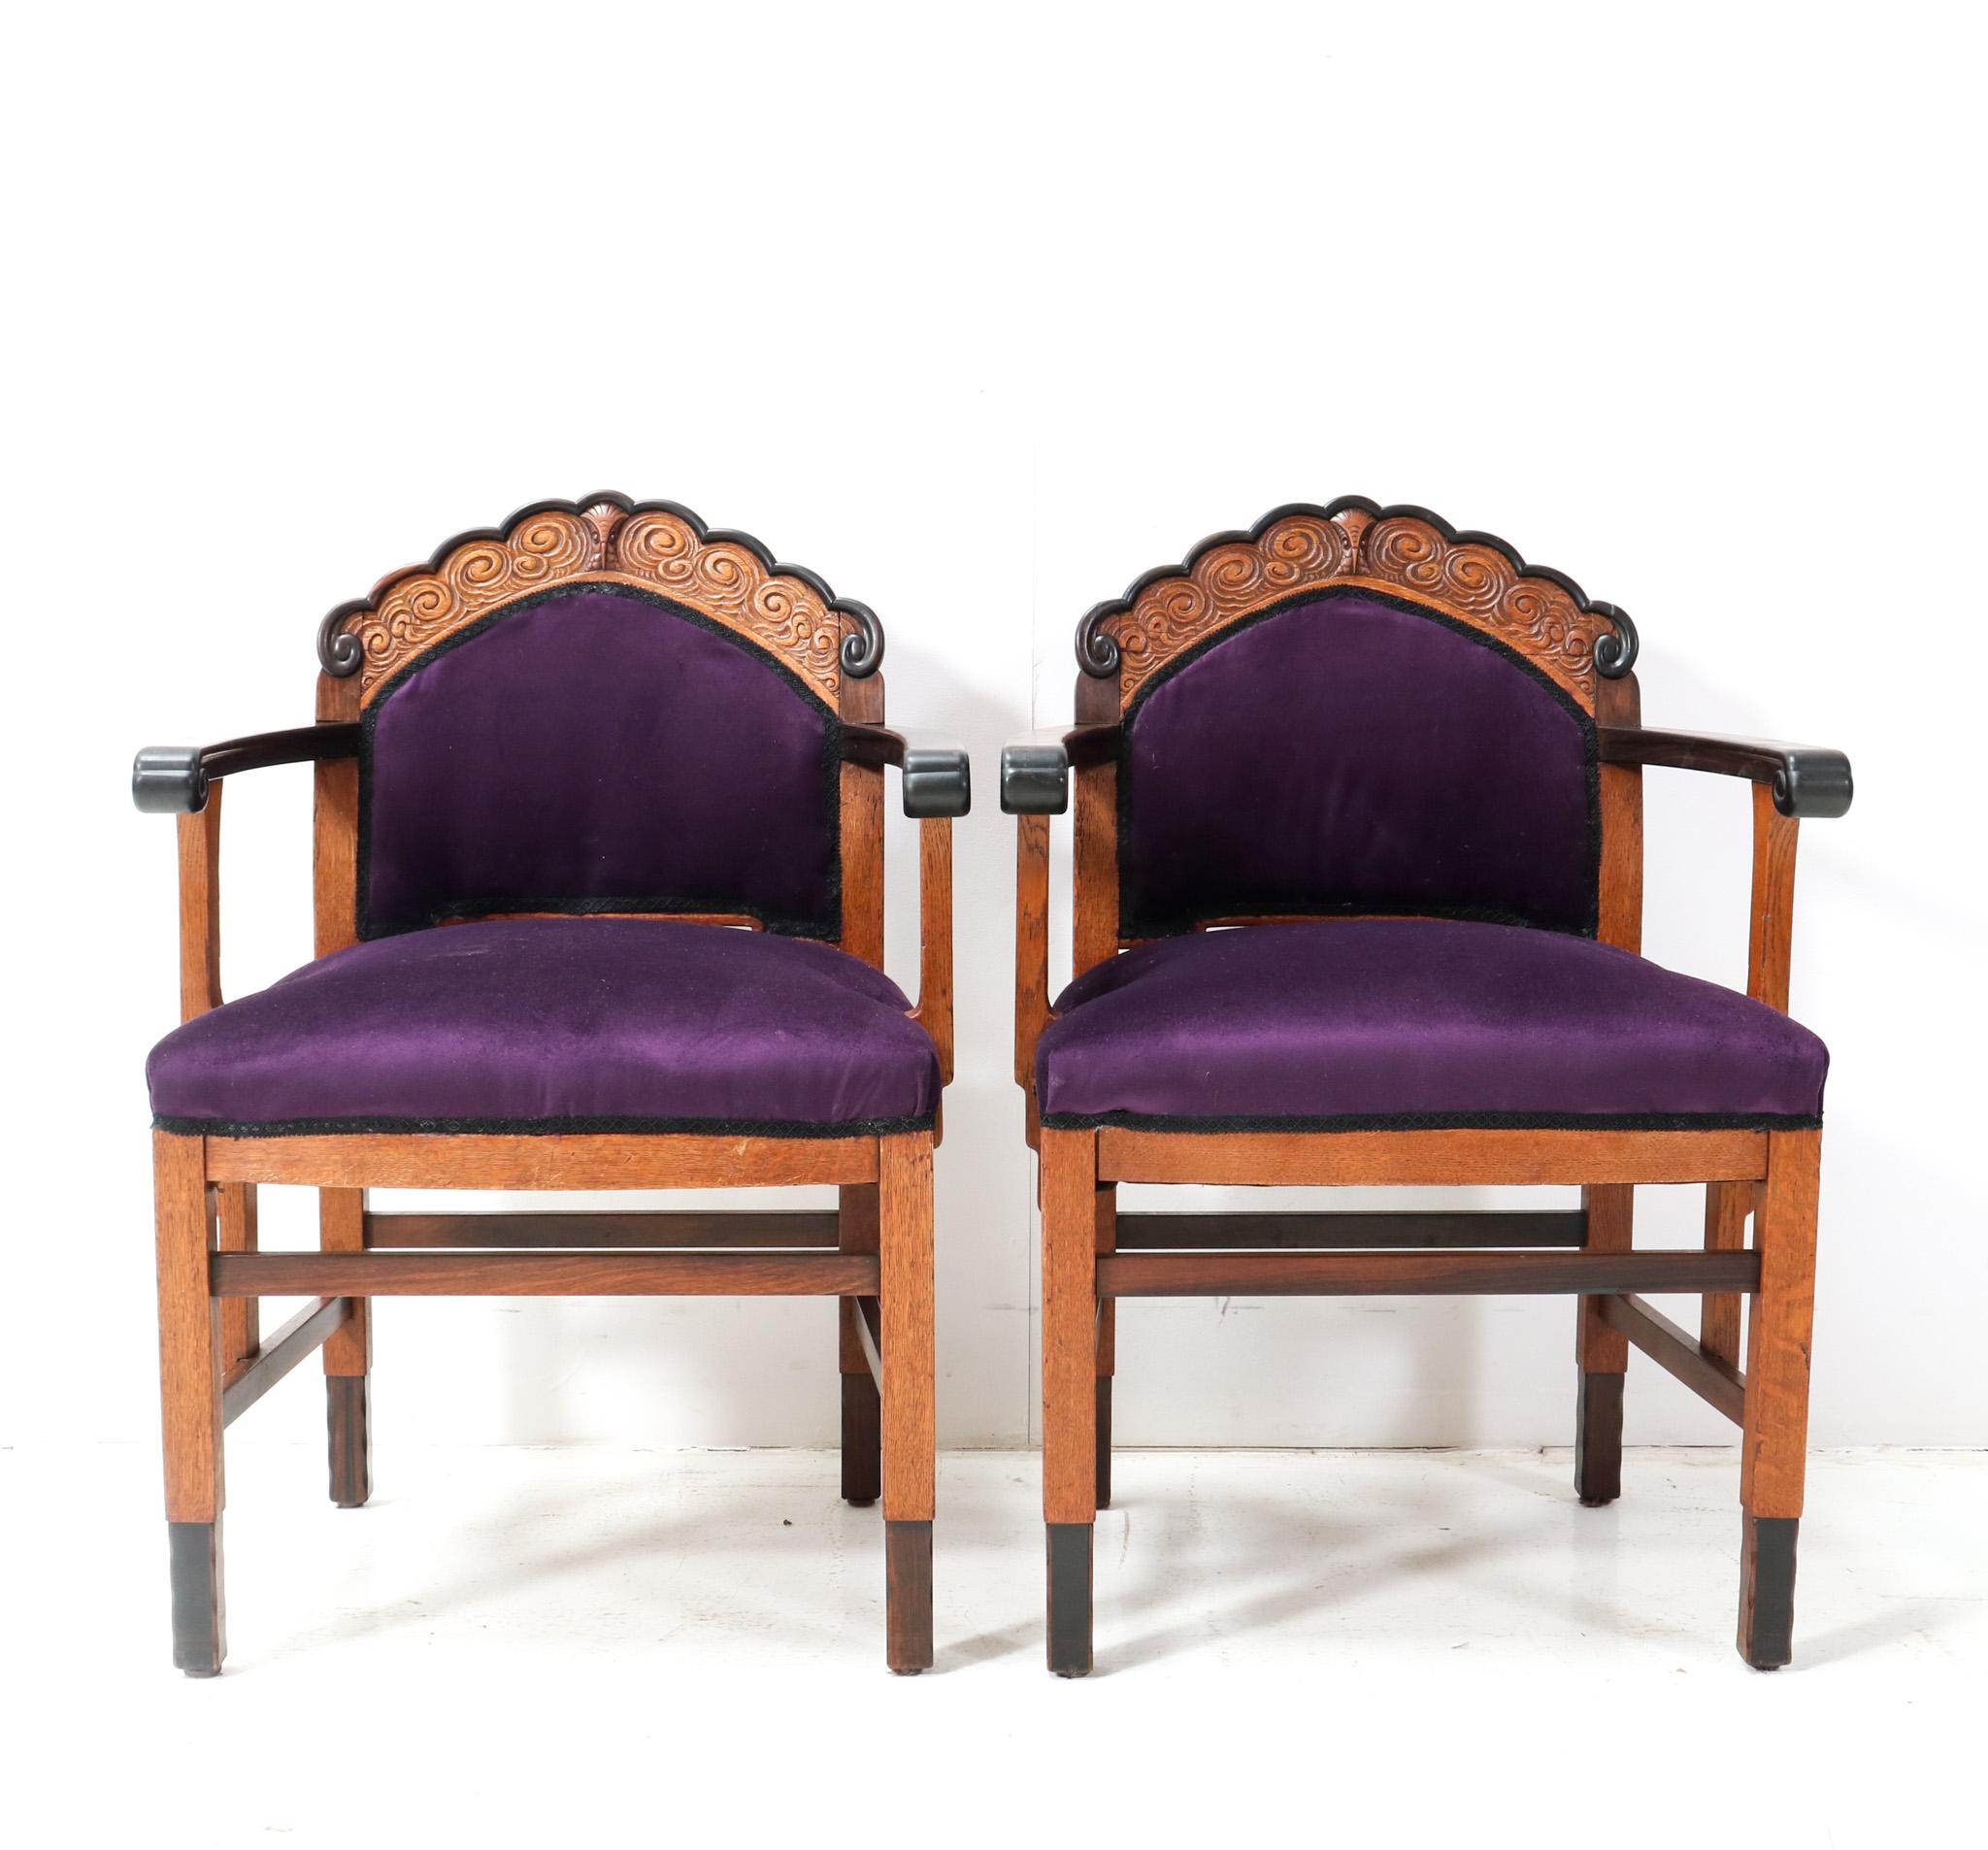 Magnifique et très rare ensemble de deux fauteuils Art Déco de l'école d'Amsterdam.
Design par un artiste inconnu mais à la manière de l'Artistics. Forage Amsterdam.
Un design néerlandais saisissant des années 1920.
Deux cadres en chêne massif avec